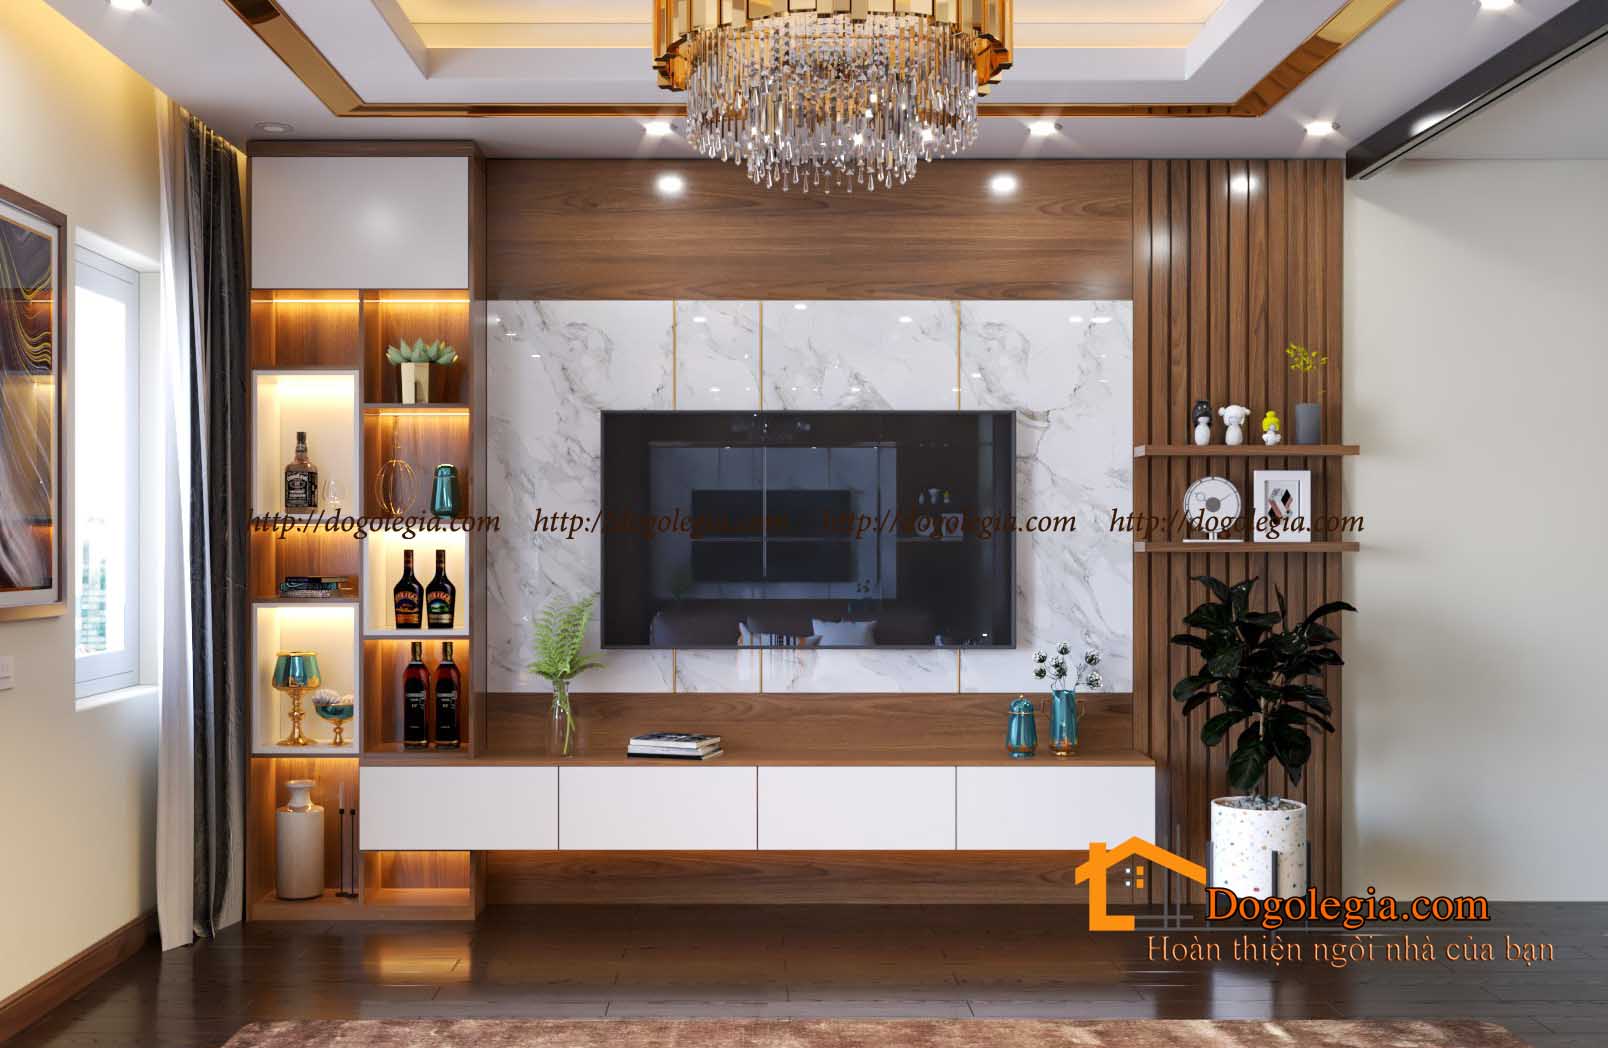 Kệ trang trí gỗ phòng khách là một trong những món đồ nội thất đang được ưa chuộng ở Việt Nam. Chúng tạo nên một không gian sang trọng và ấm cúng cho gia đình bạn. Hãy thưởng thức bức ảnh liên quan để thấy được sức hút của kệ trang trí gỗ phòng khách đến từng chi tiết nhỏ.